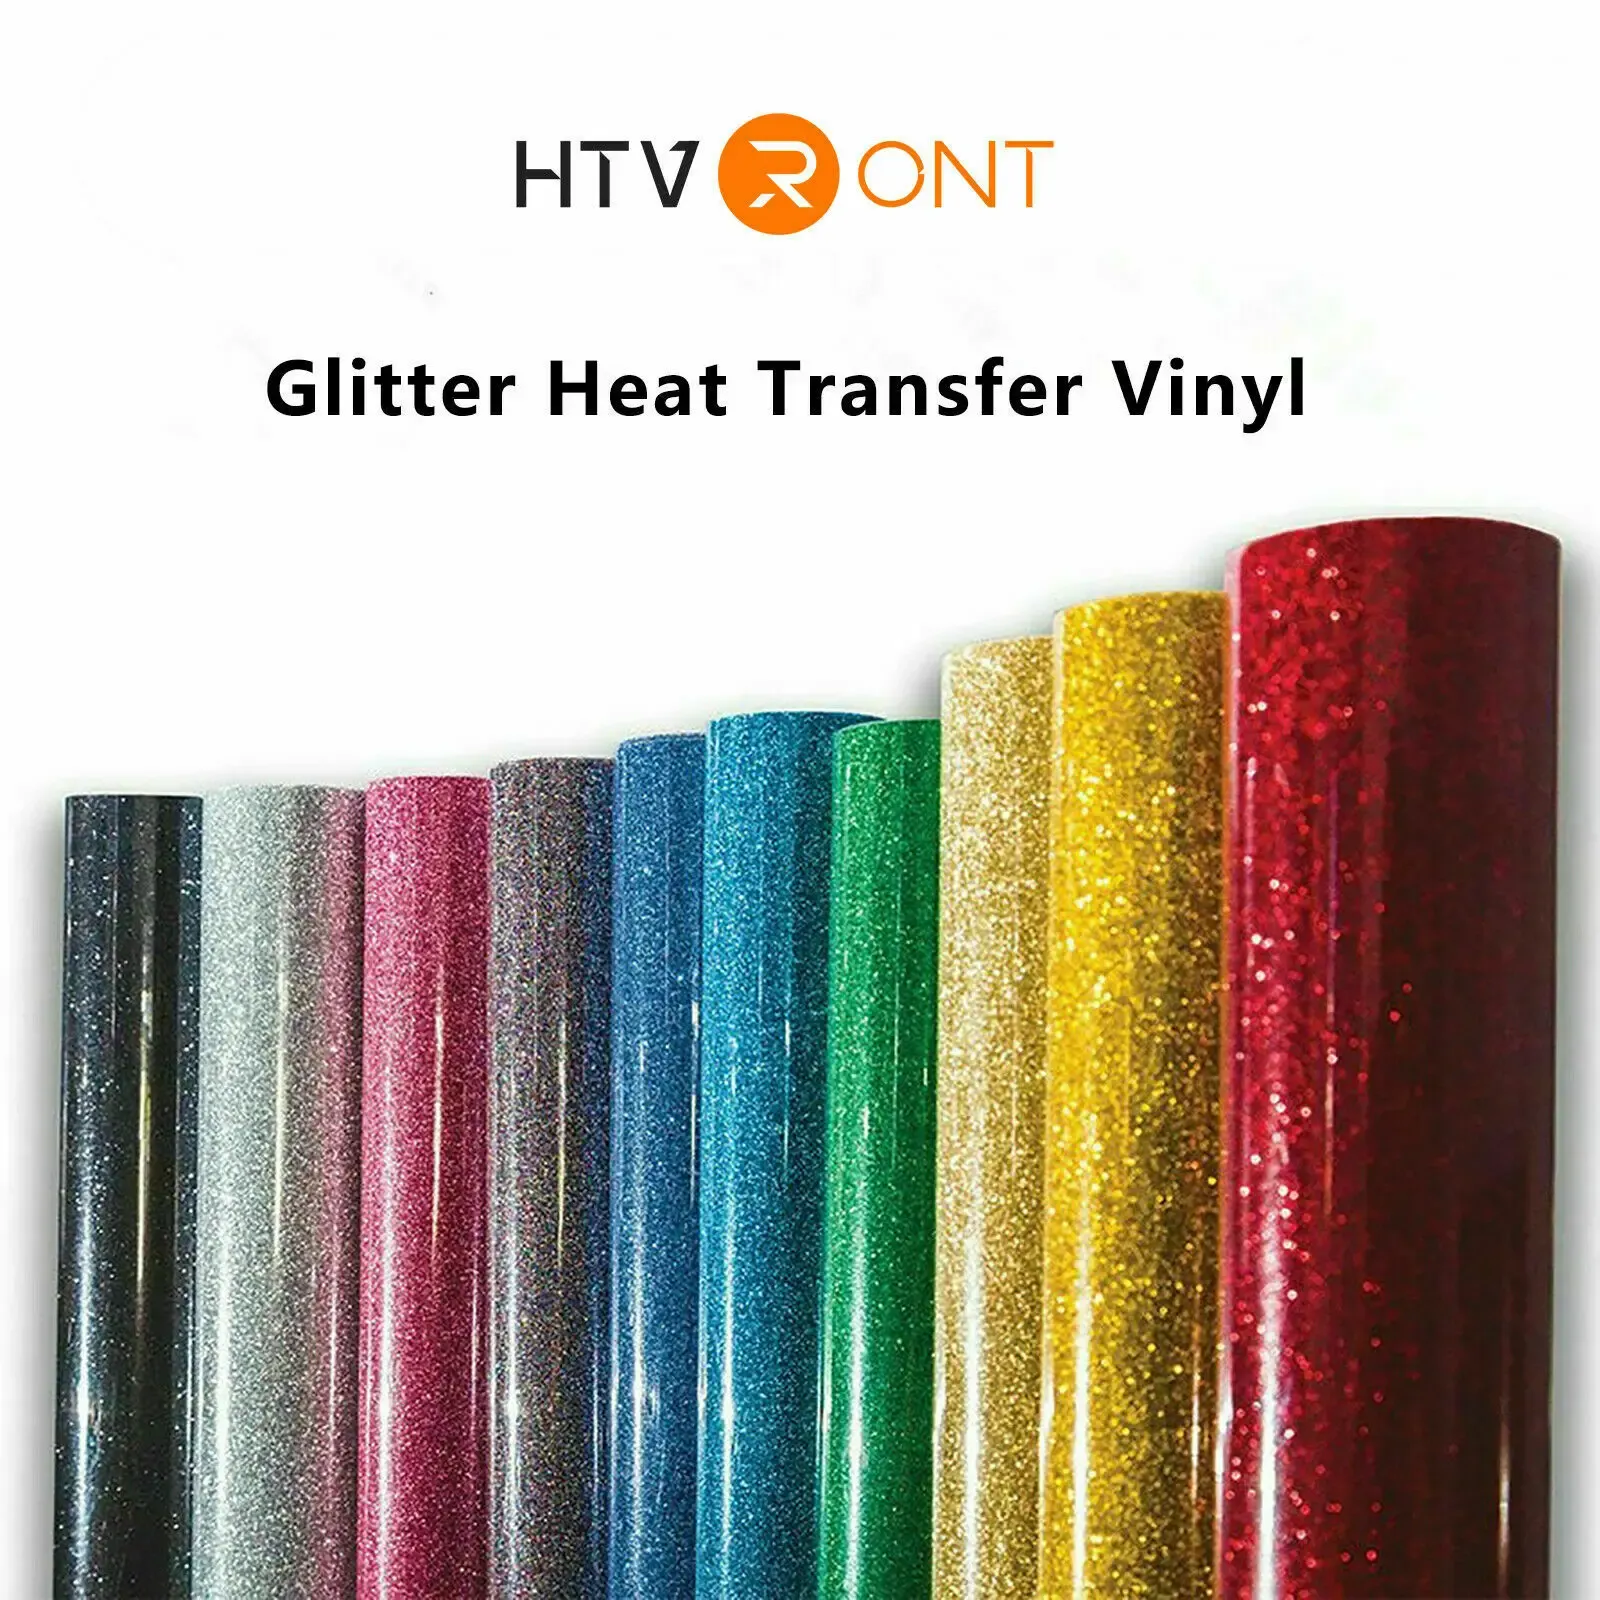 10 x 60 Zoll/25 x 152 cm HTVRONT Wärmeübertragungs-Glitzer-Vinyl für T-Shirts DIY Handwerk zum Aufbügeln auf HTV-Rolle Dekorfolie Drucken Kleidung